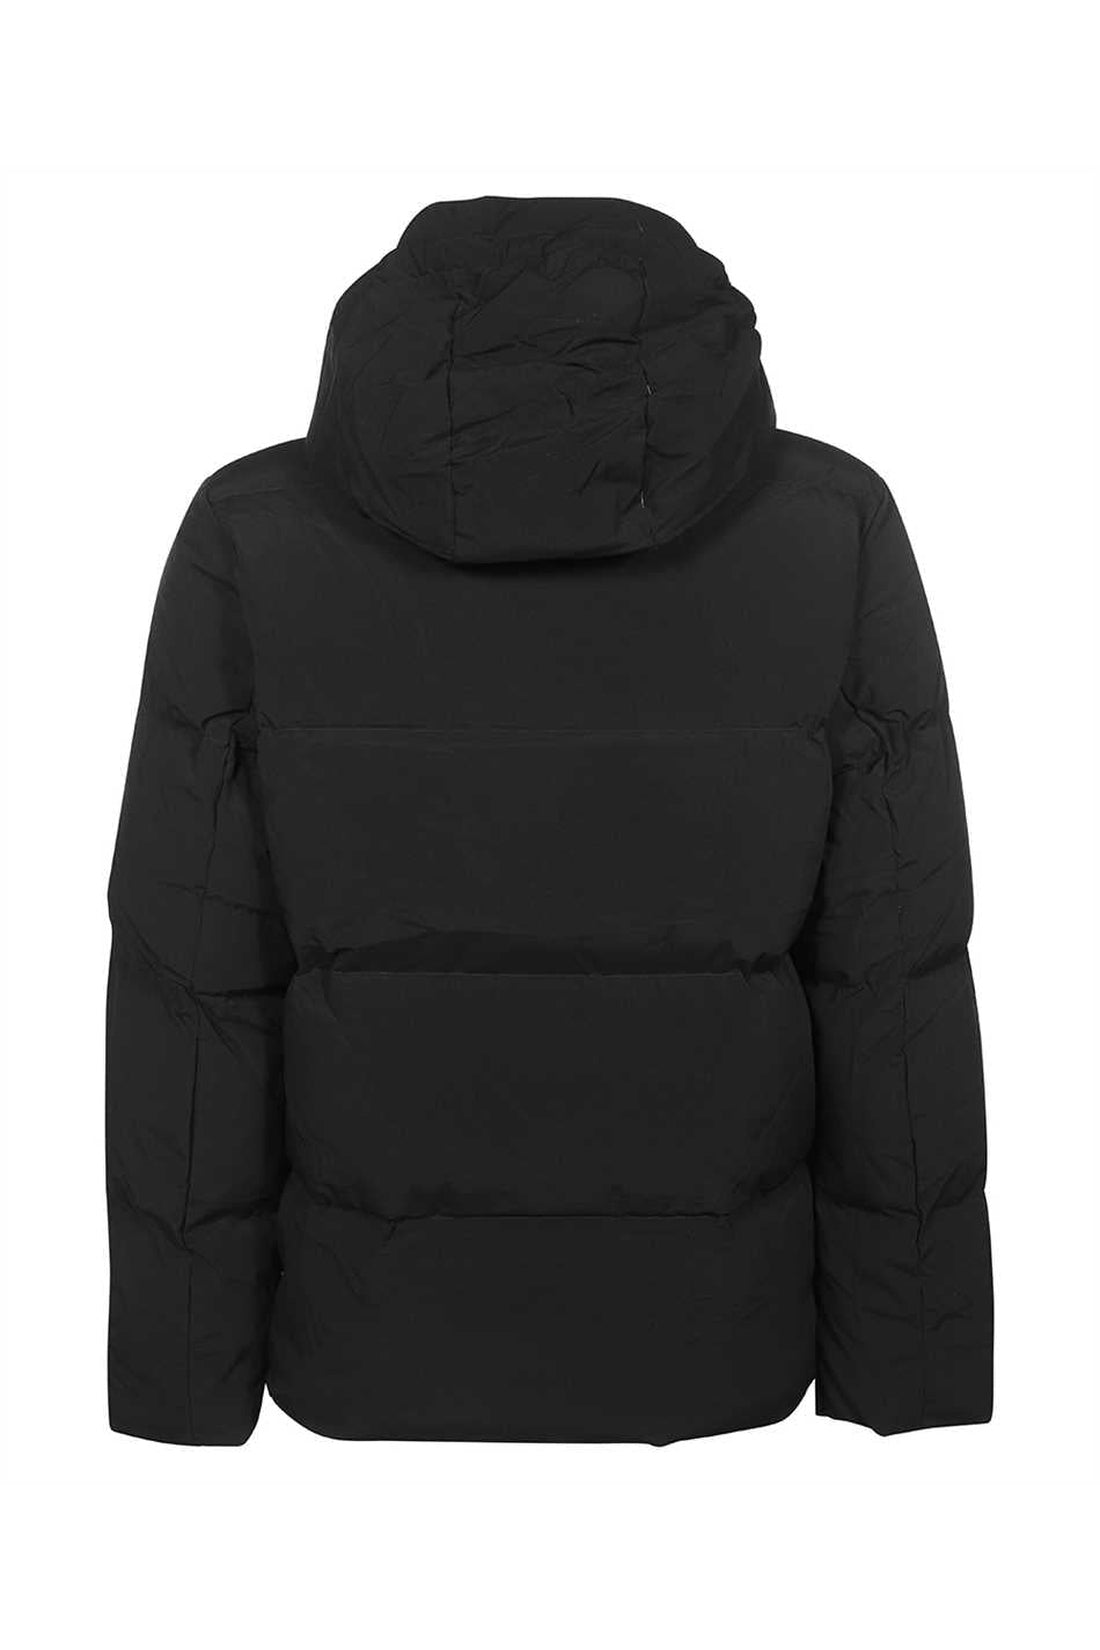 Les Deux-OUTLET-SALE-Hooded down jacket-ARCHIVIST